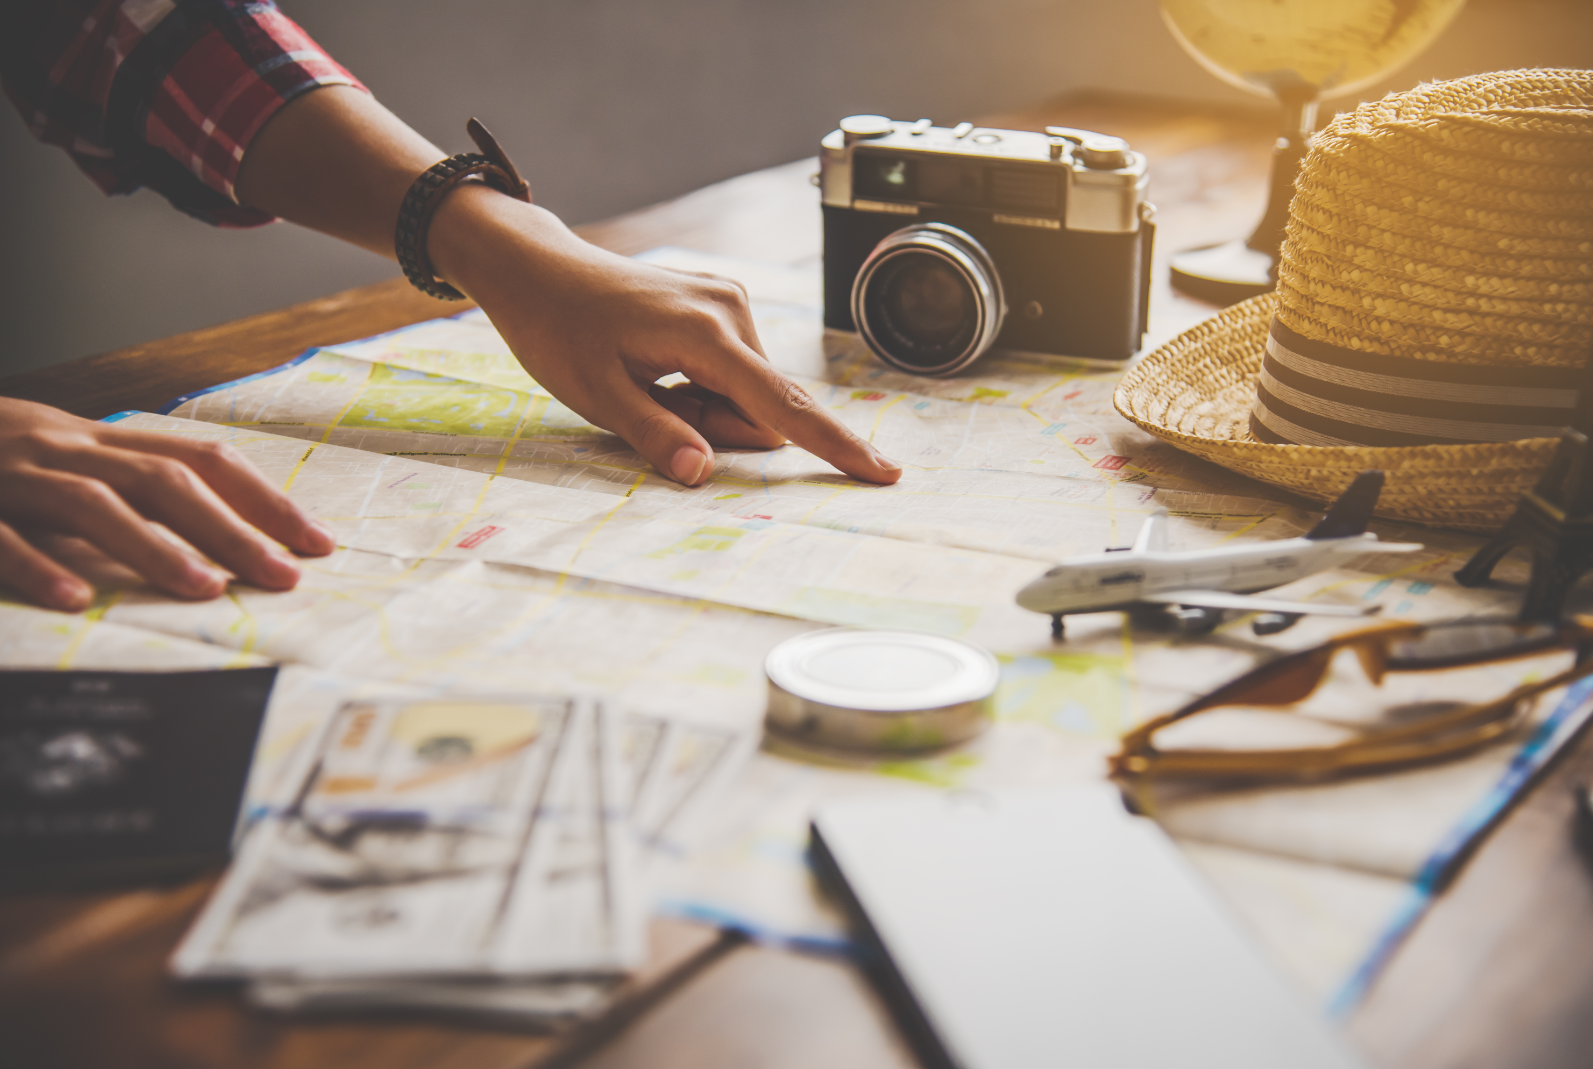 Na sole leży mapa, apart fotograficzny, kapelusz i rózne drobiazgi kojarzace się z podróżą. Ktoś palcem wskazuje wybrane miejsce na mapie.